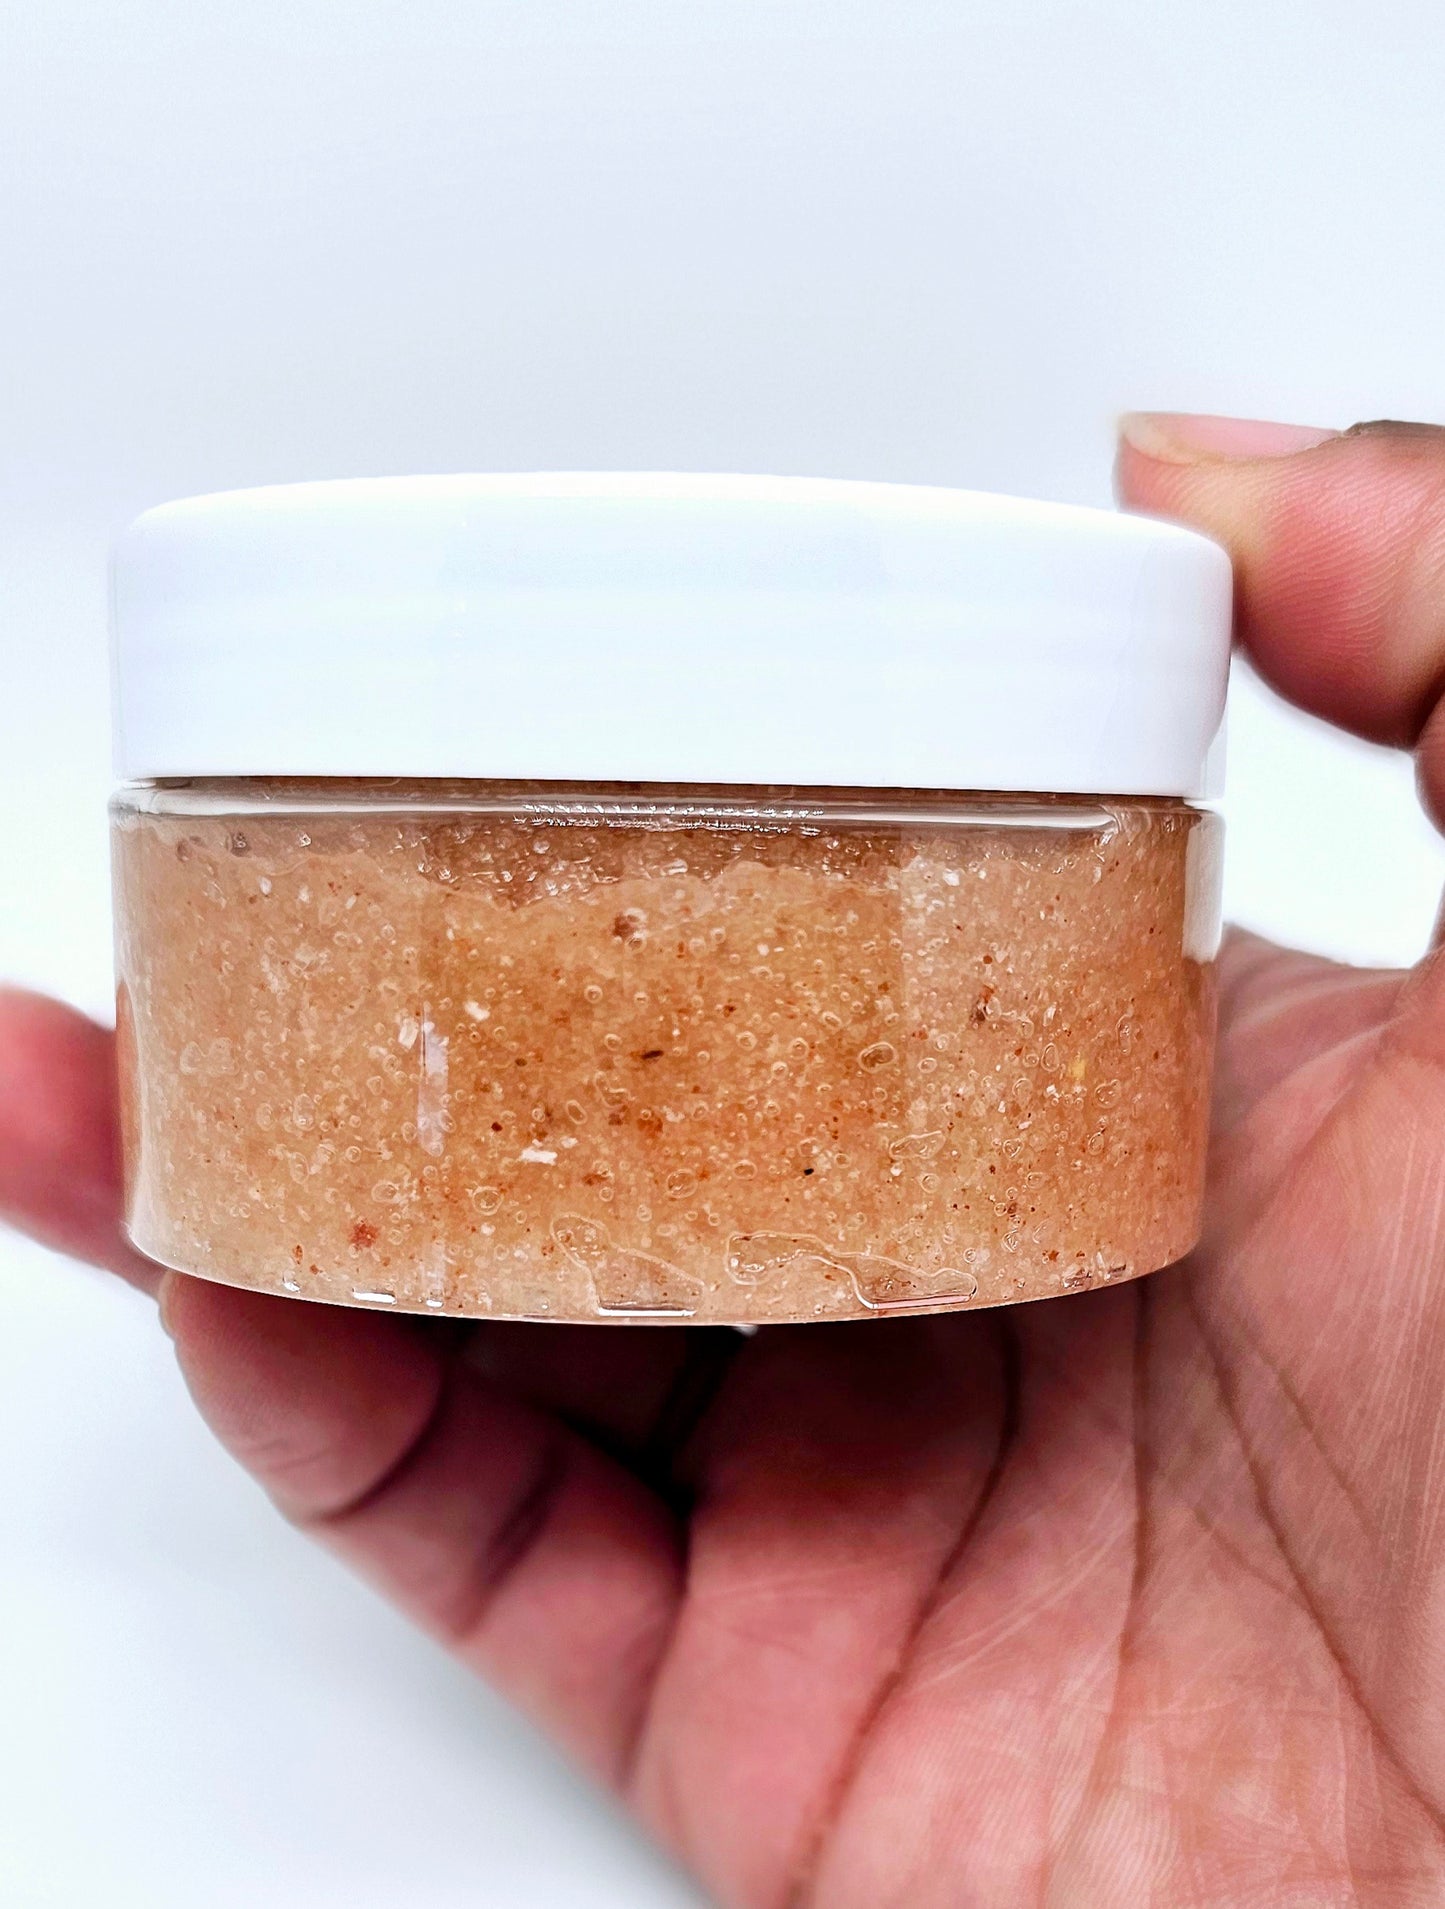 Turmeric & Honey Dark Spot Scrub - Natural Skin Brightening Solution